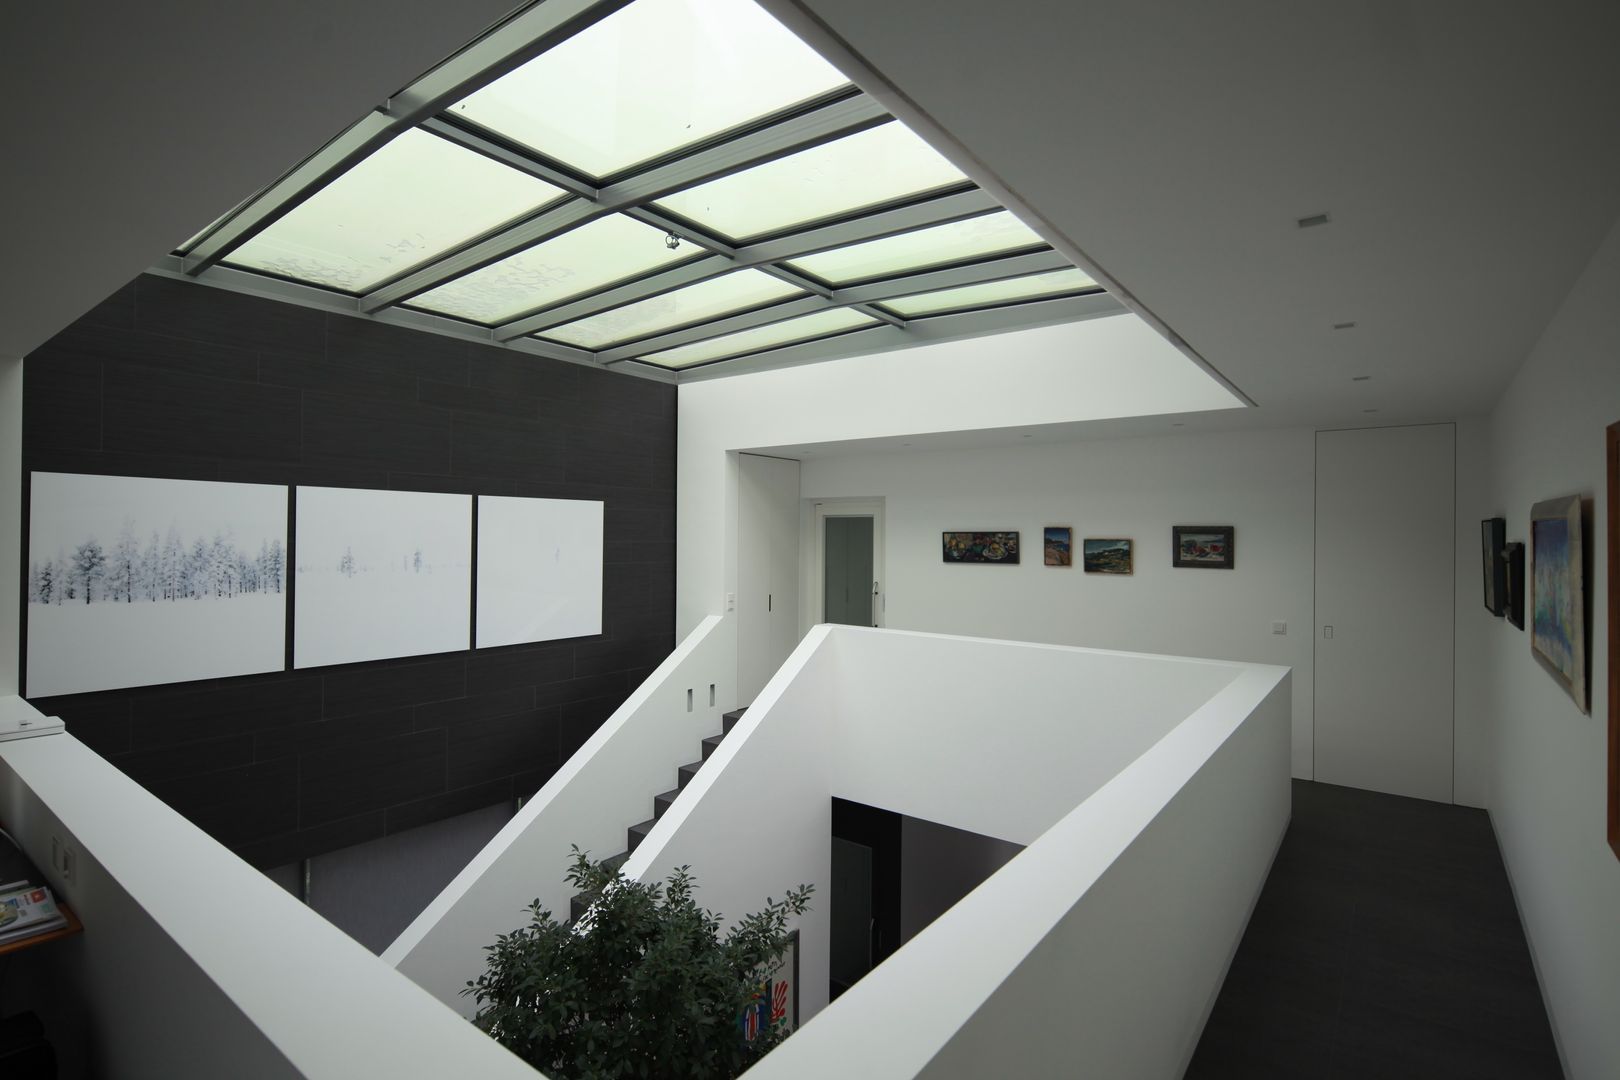 Anwesen in Freising, Herzog-Architektur Herzog-Architektur Pasillos, vestíbulos y escaleras modernos